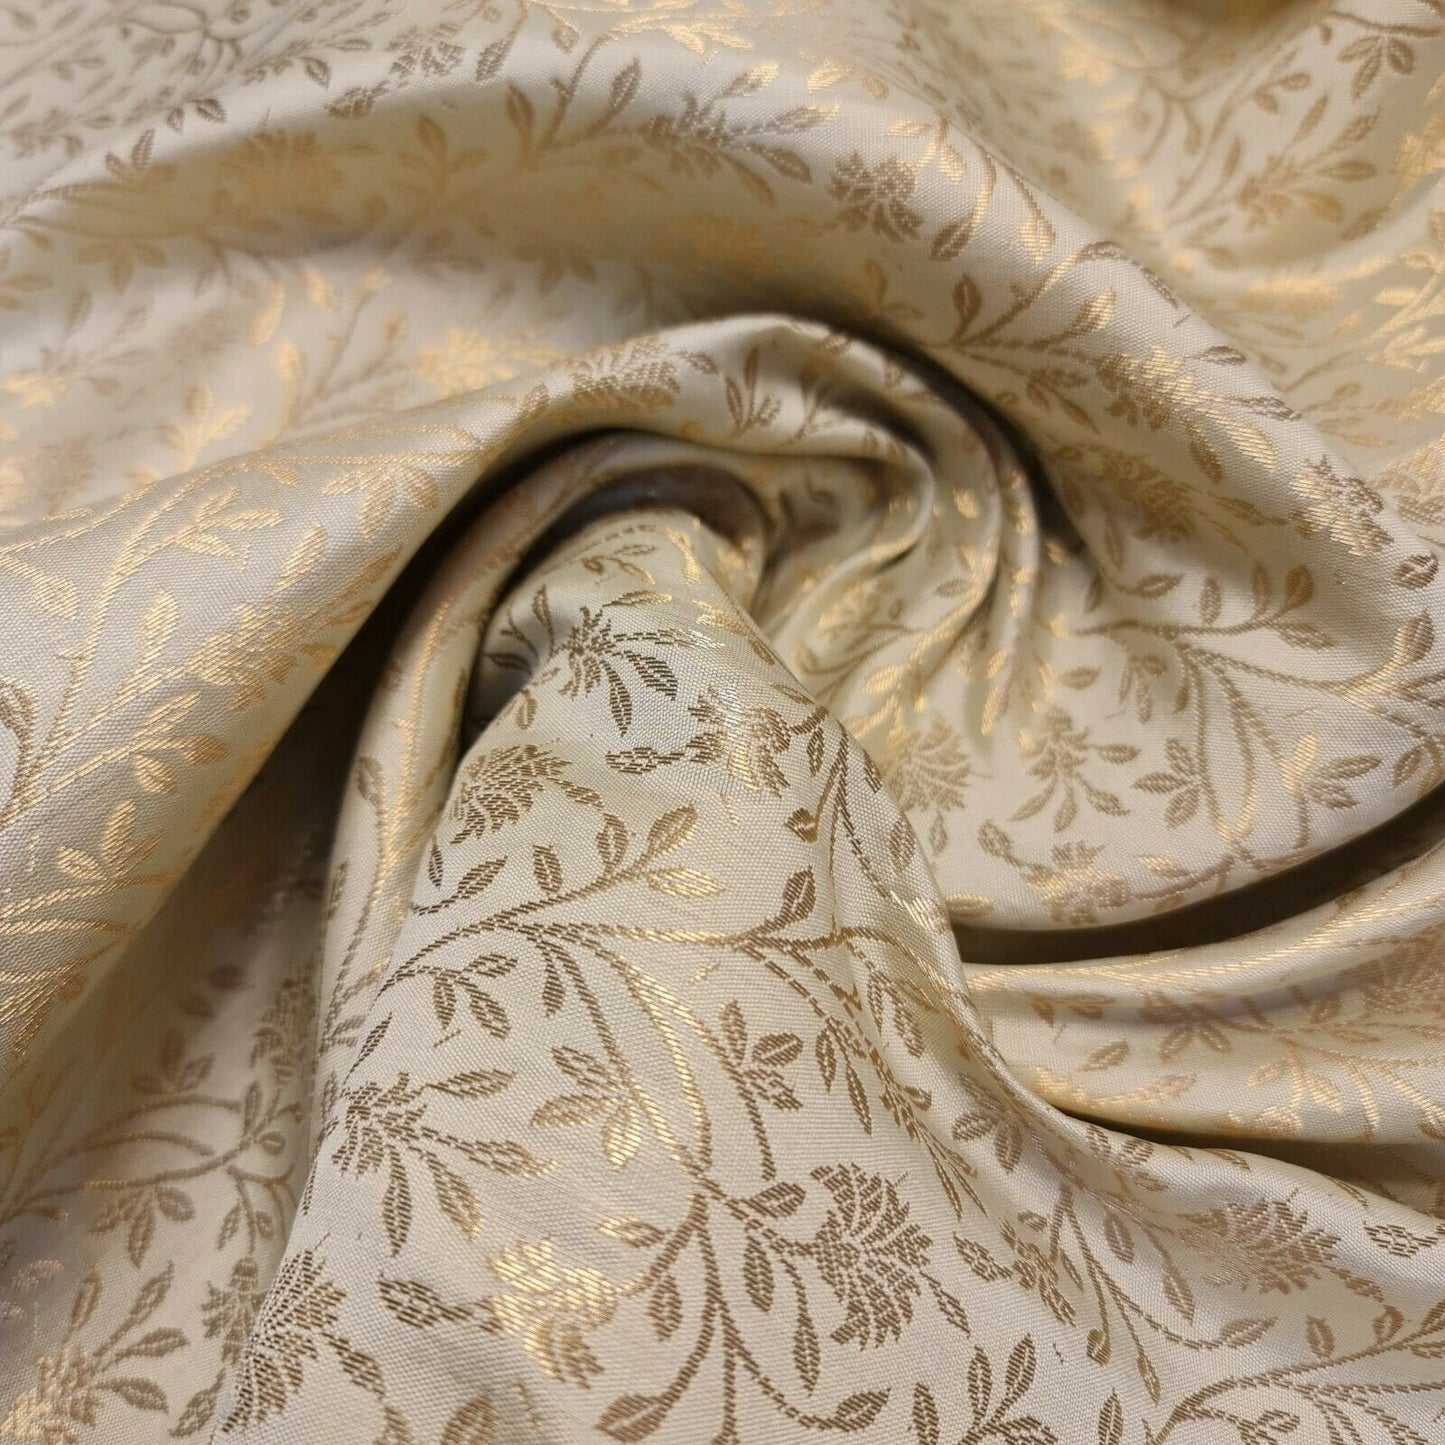 Floral Gold Metallic Indian Banaras Brocade Waistcoat Dress Curtain Fabric 58"